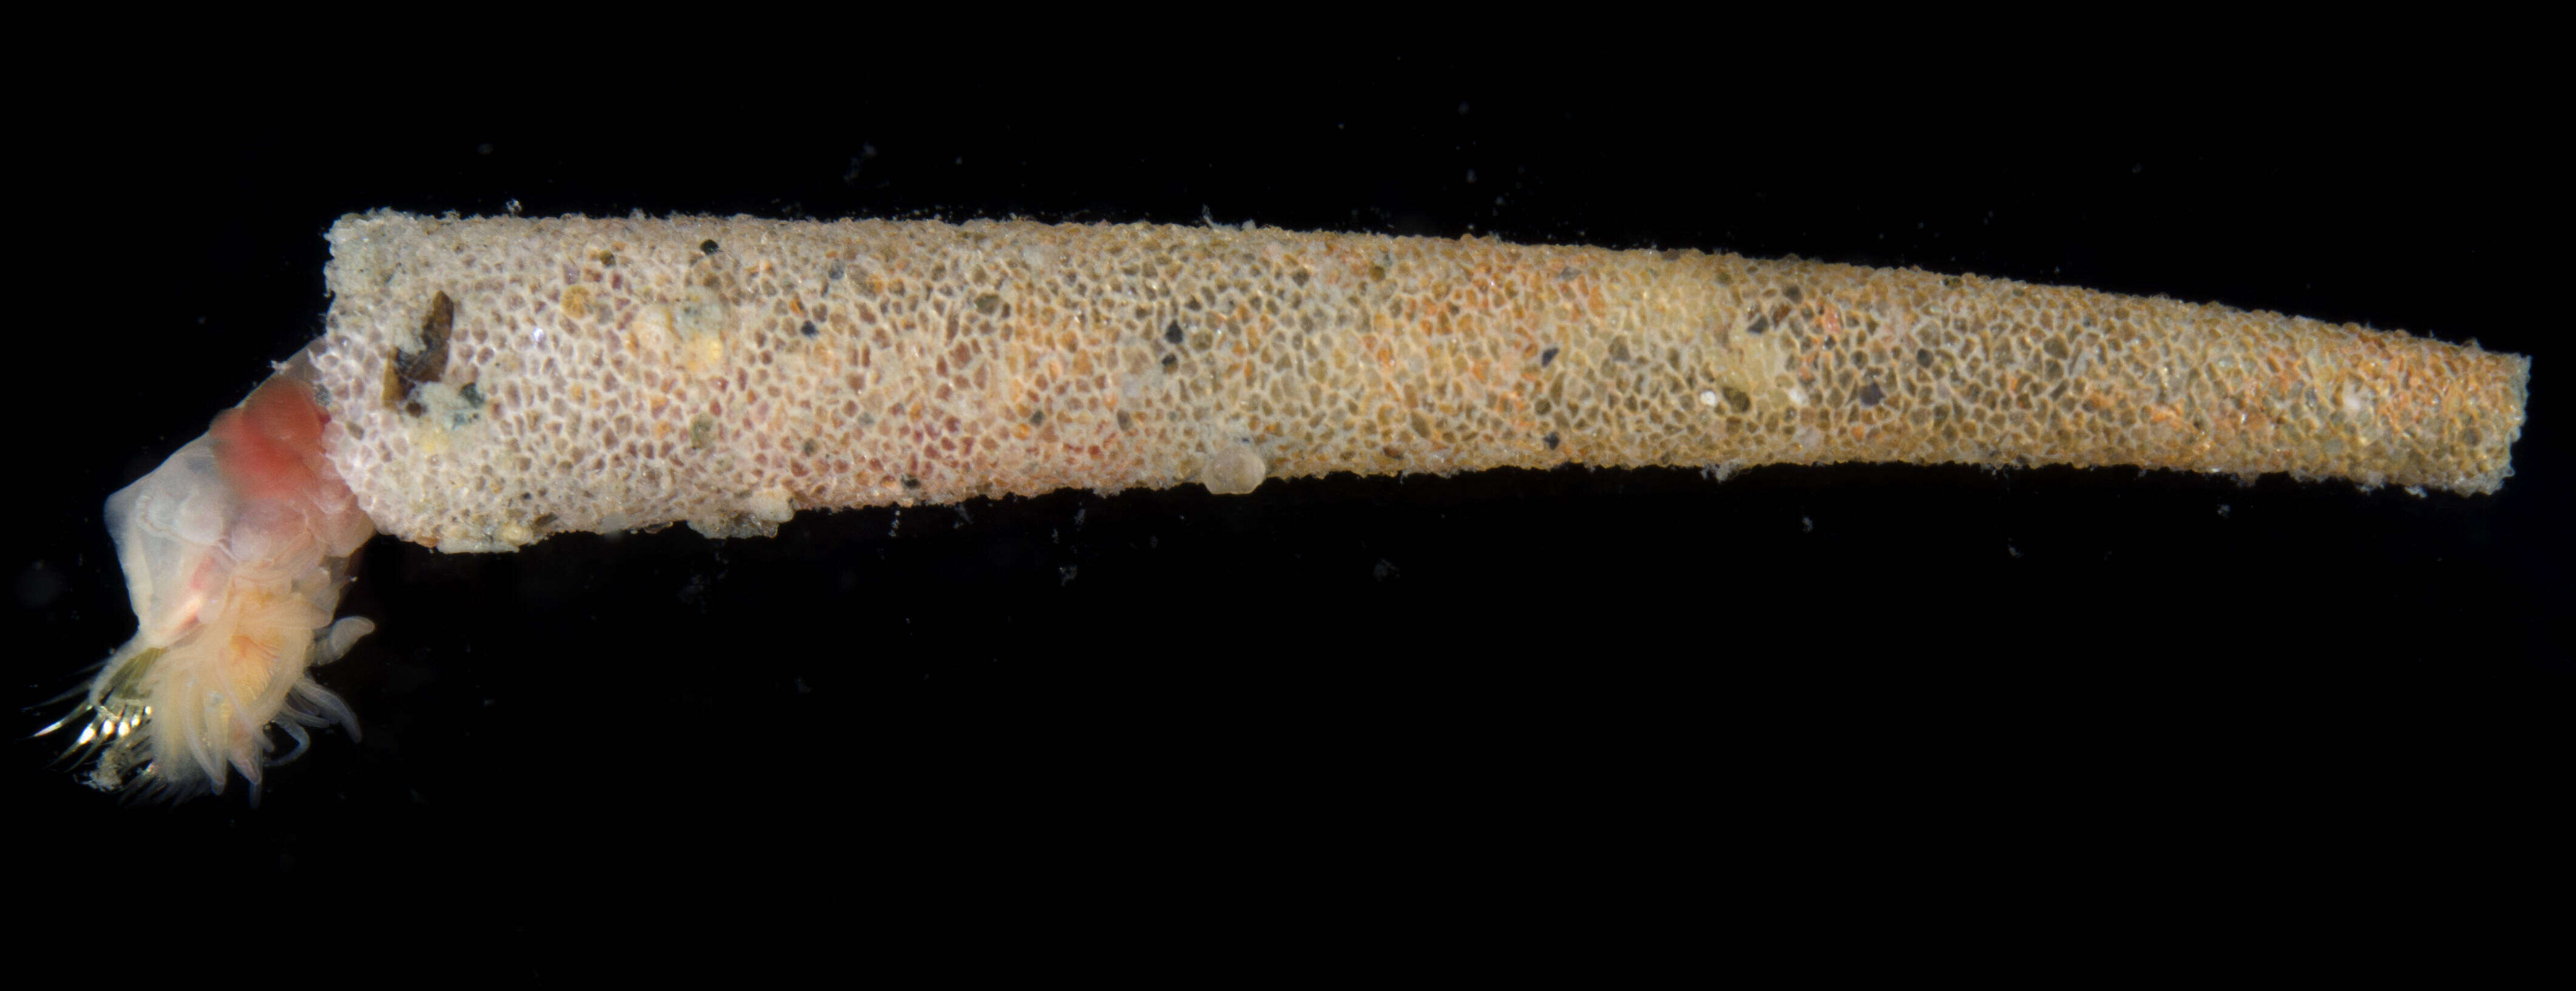 Image of ice cream cone worm